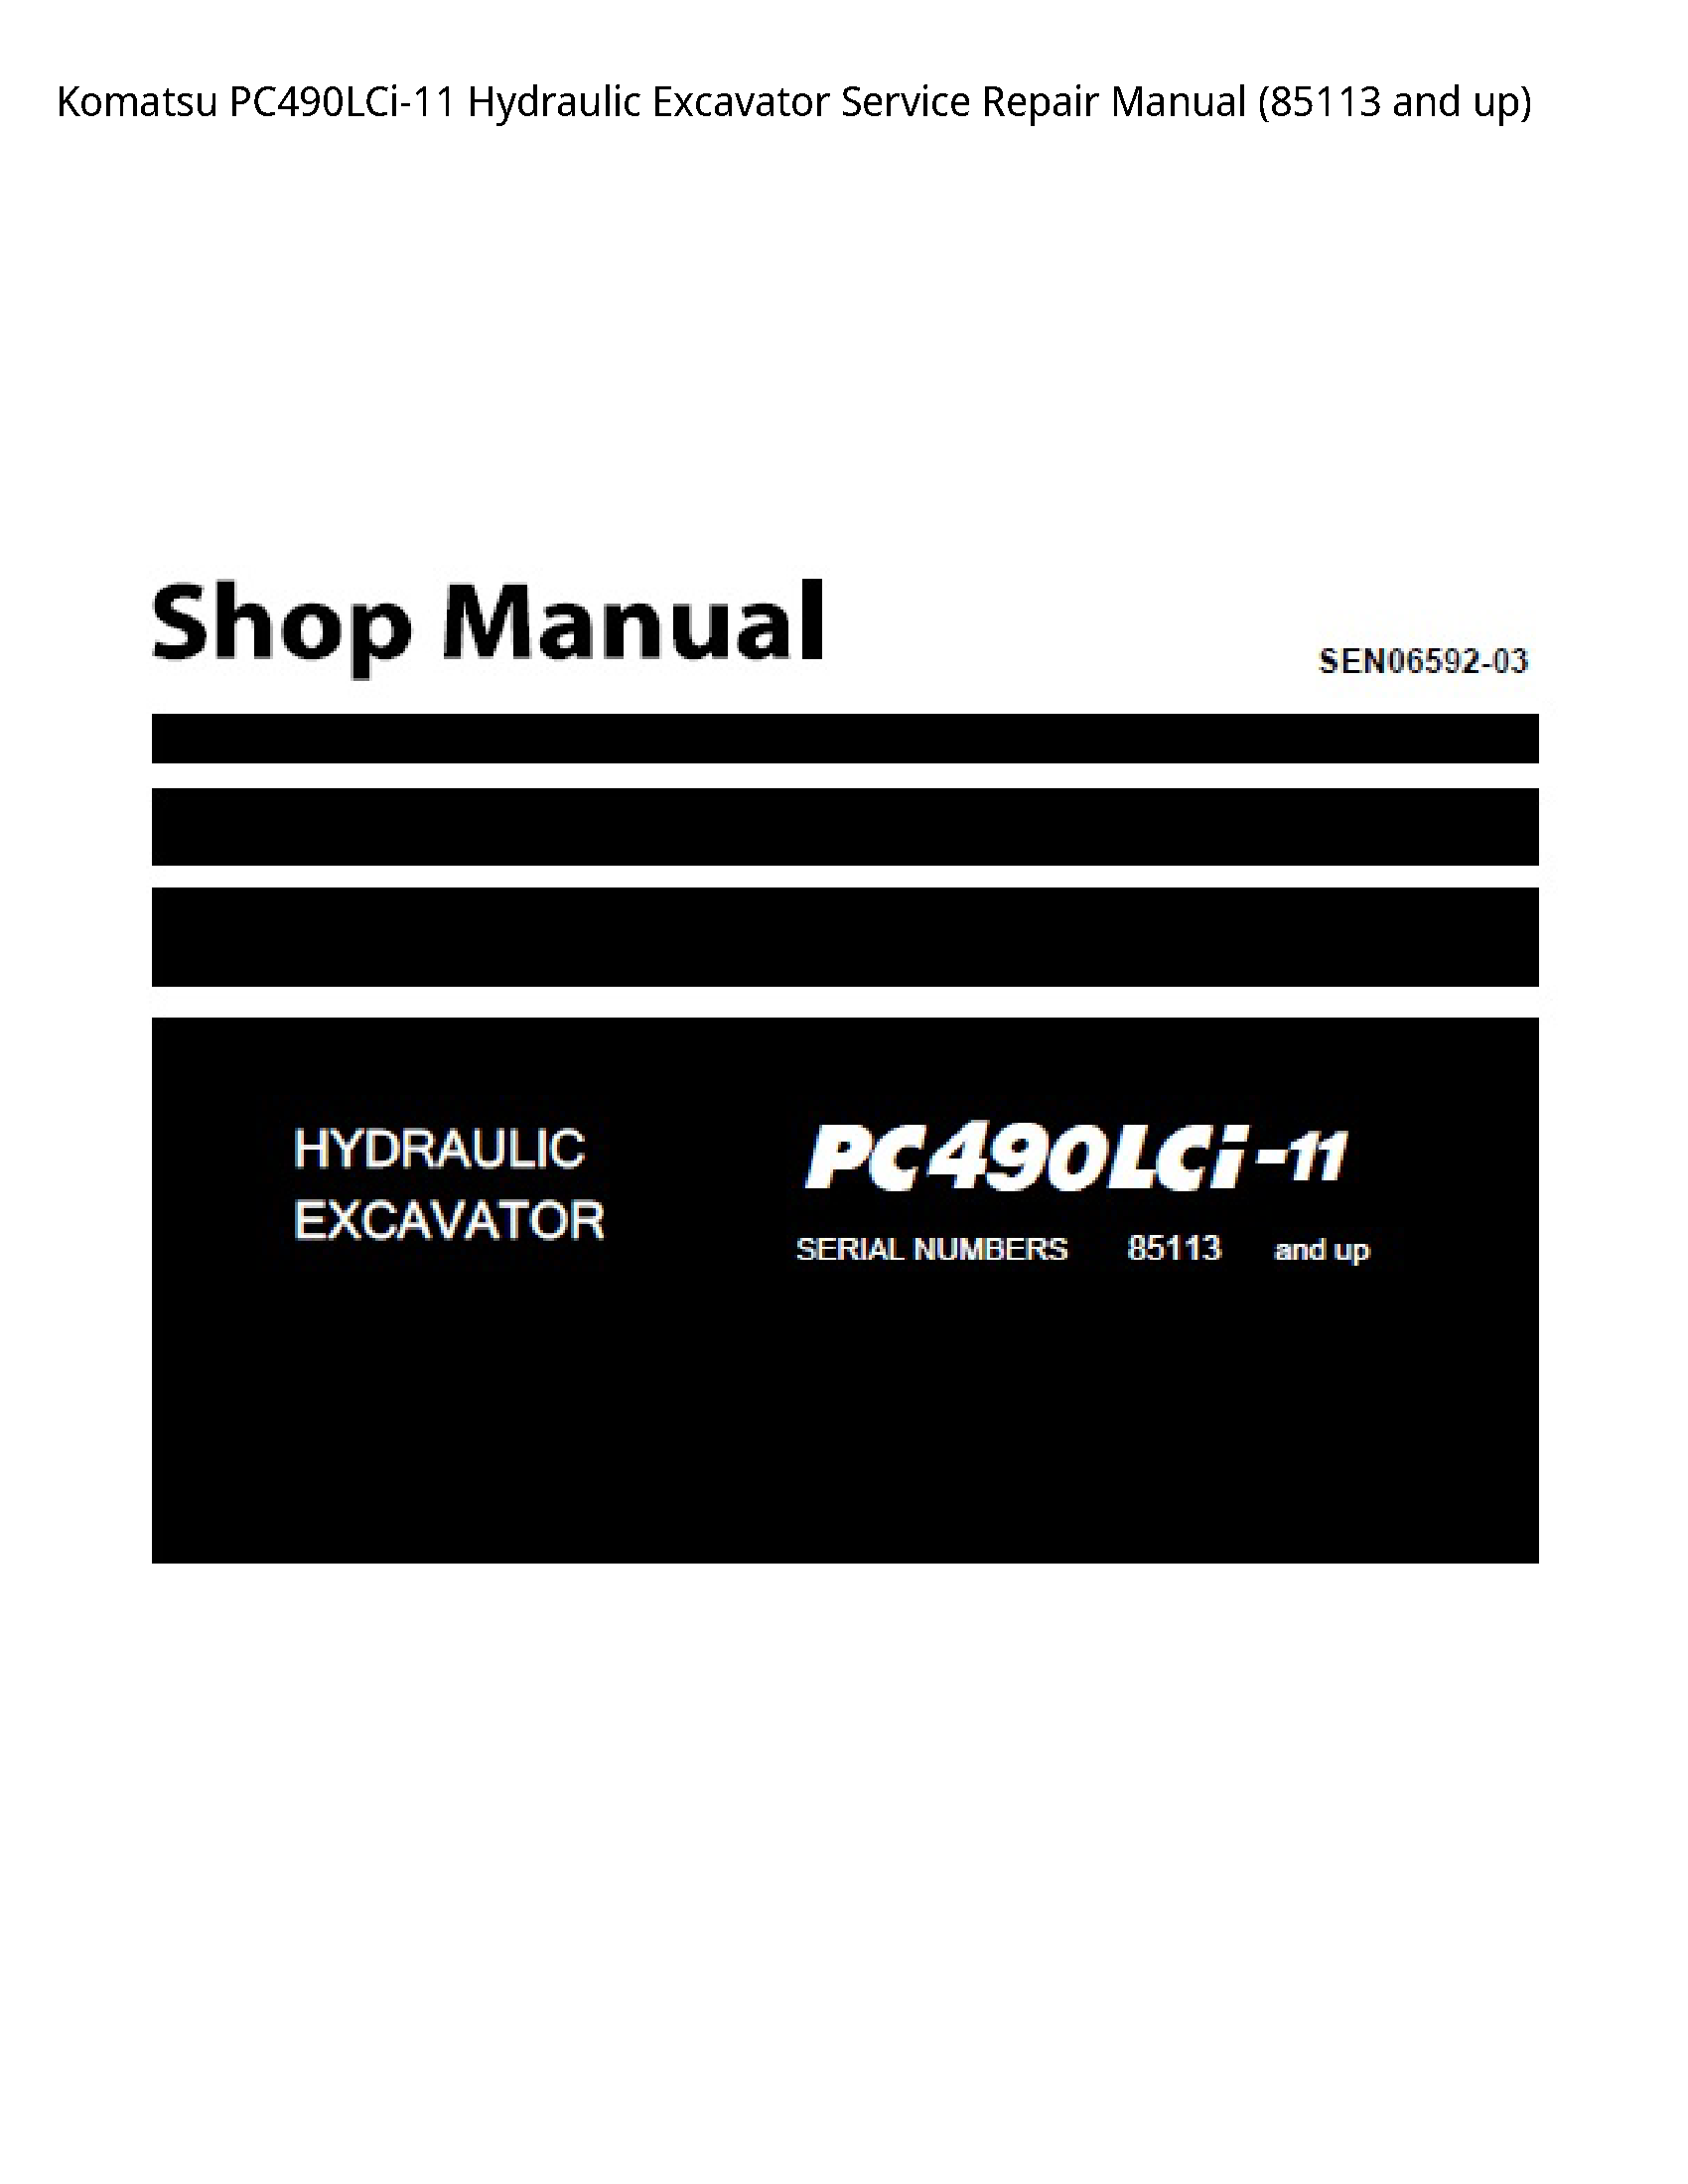 KOMATSU PC490LCi-11 Hydraulic Excavator manual